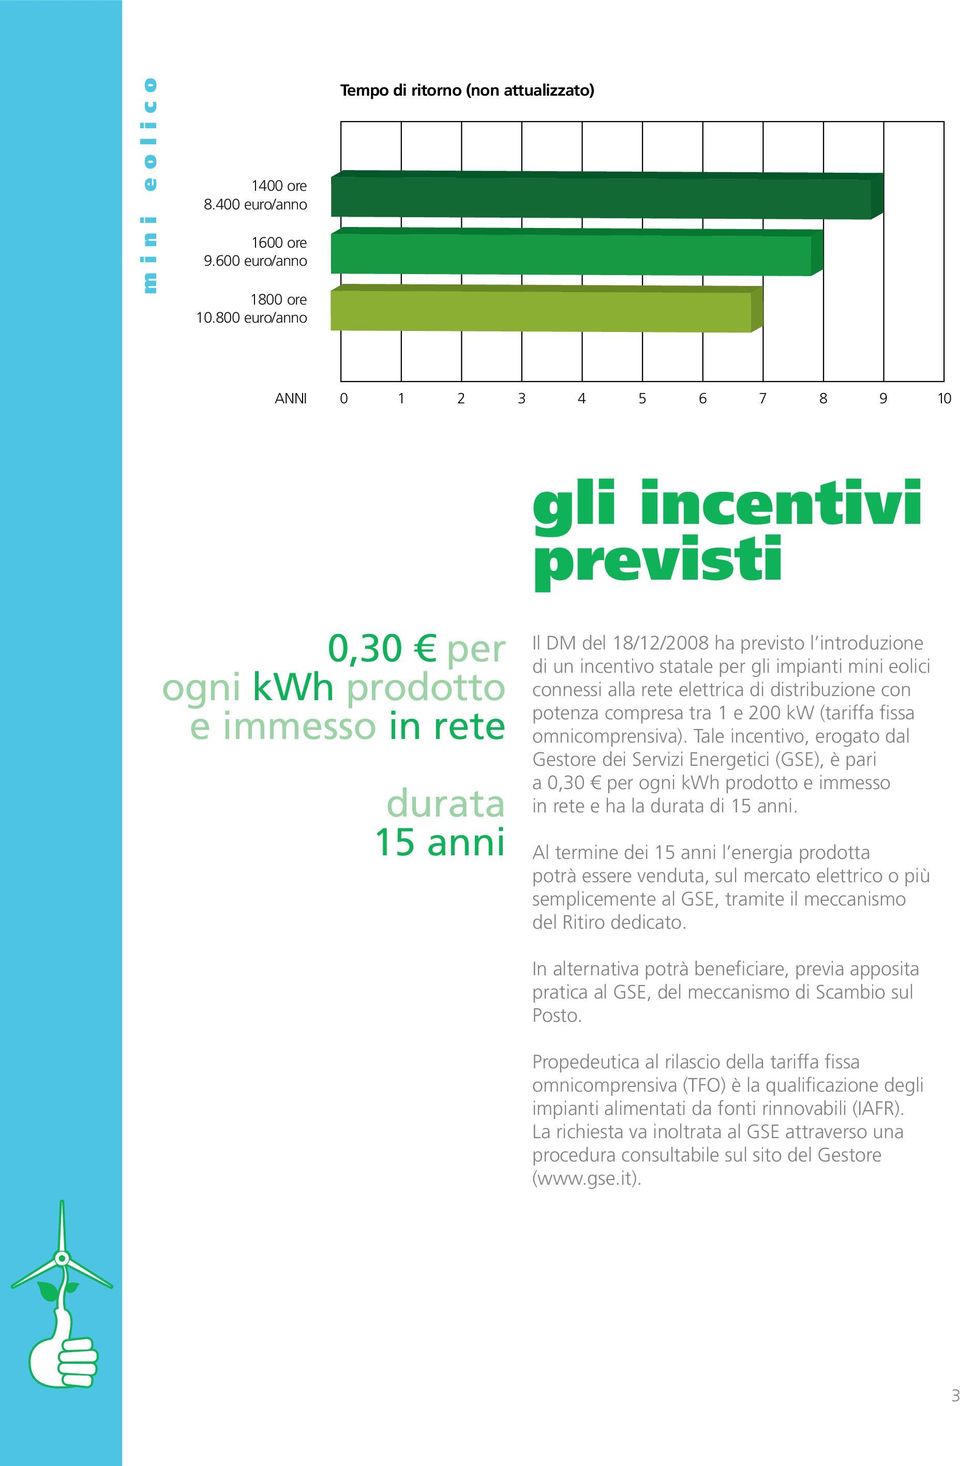 introduzione di un incentivo statale per gli impianti mini eolici connessi alla rete elettrica di distribuzione con potenza compresa tra 1 e 200 kw (tariffa fissa omnicomprensiva).